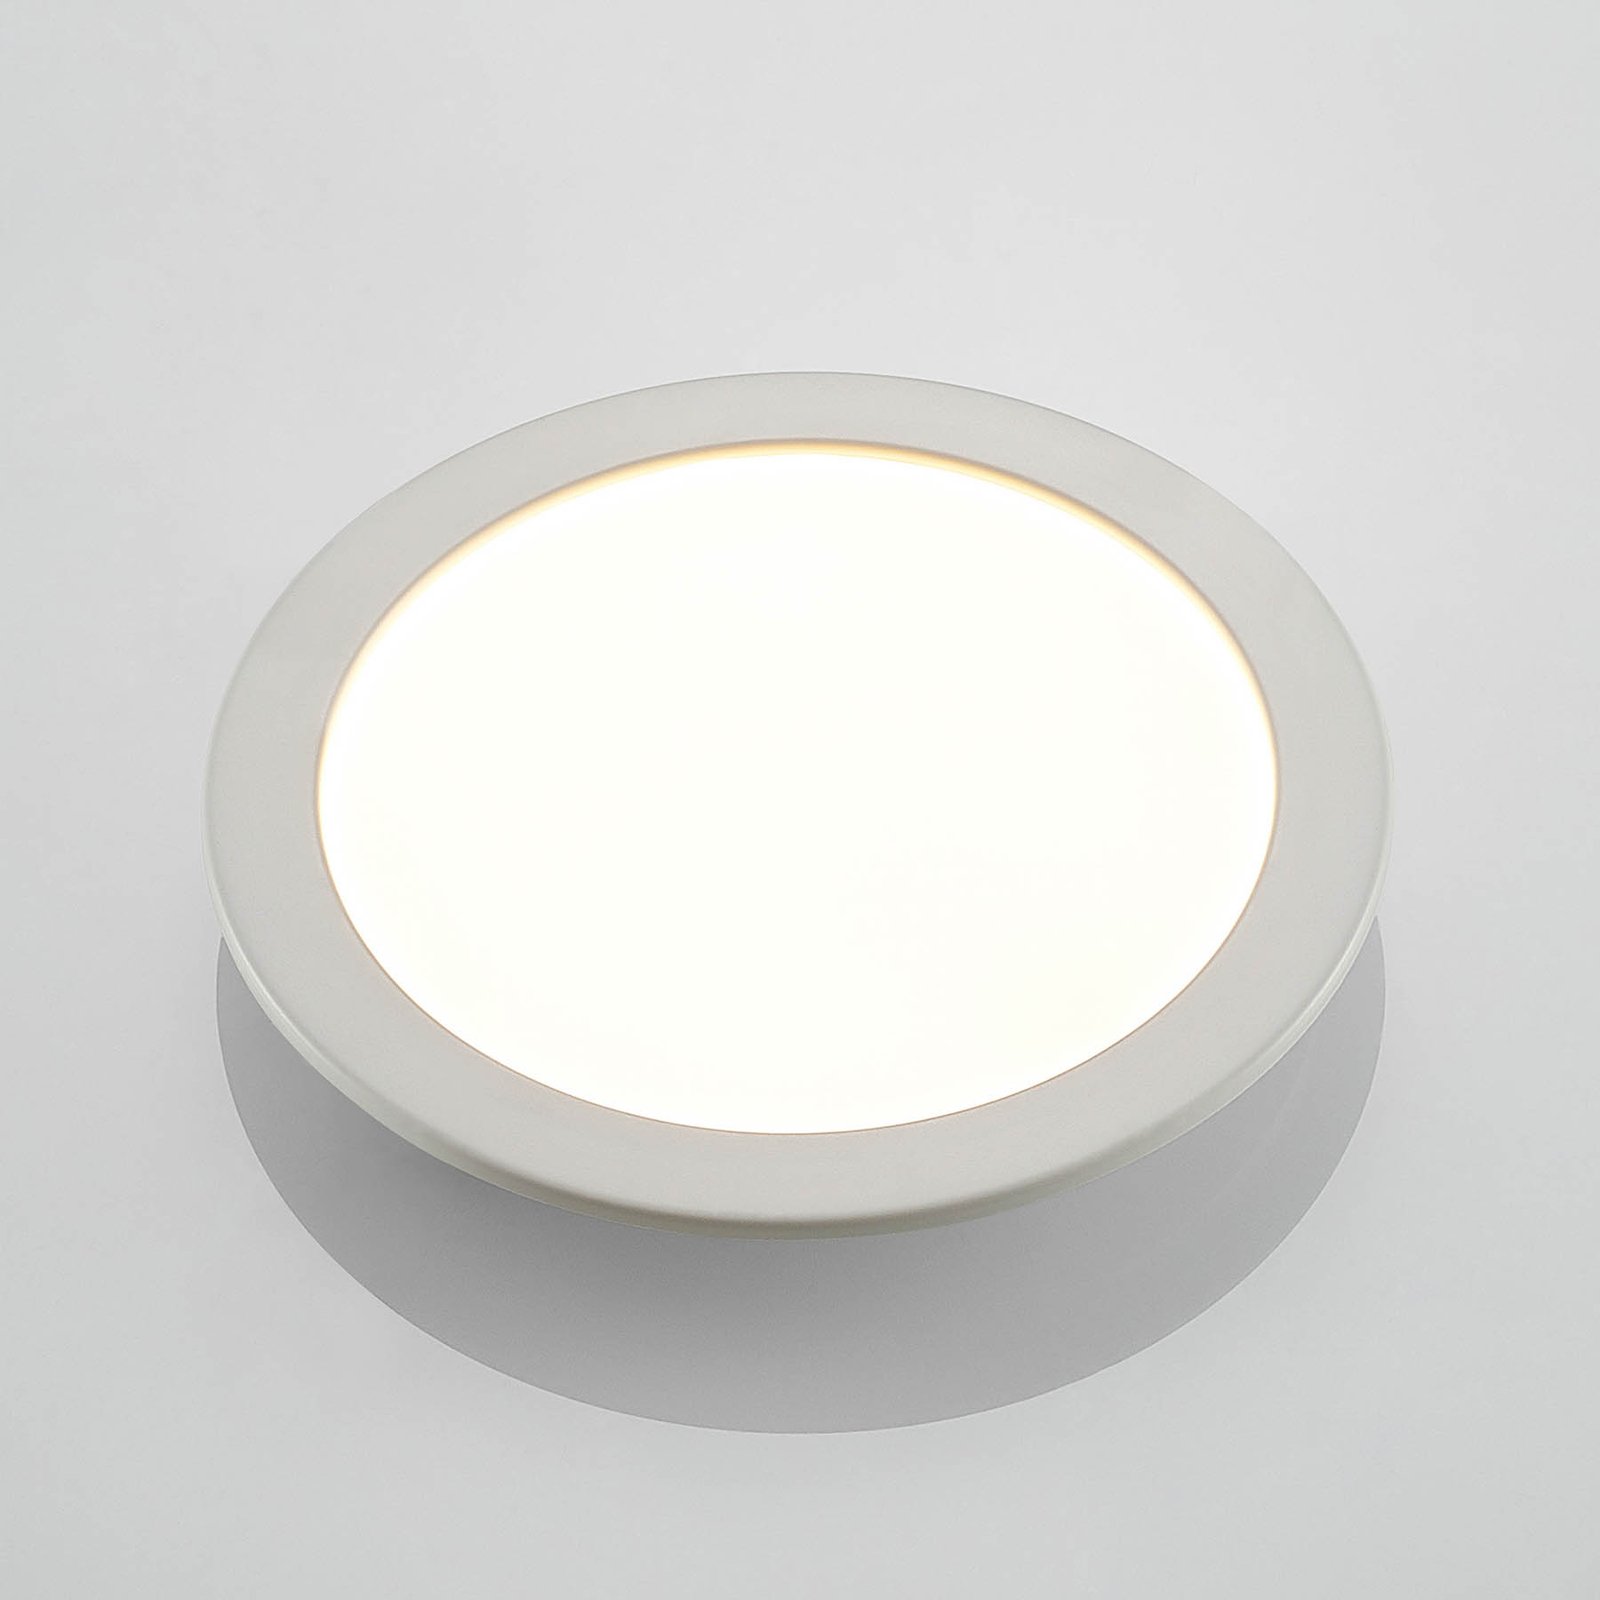 Prios Cadance LED-Einbaulampe, weiß, 24 cm